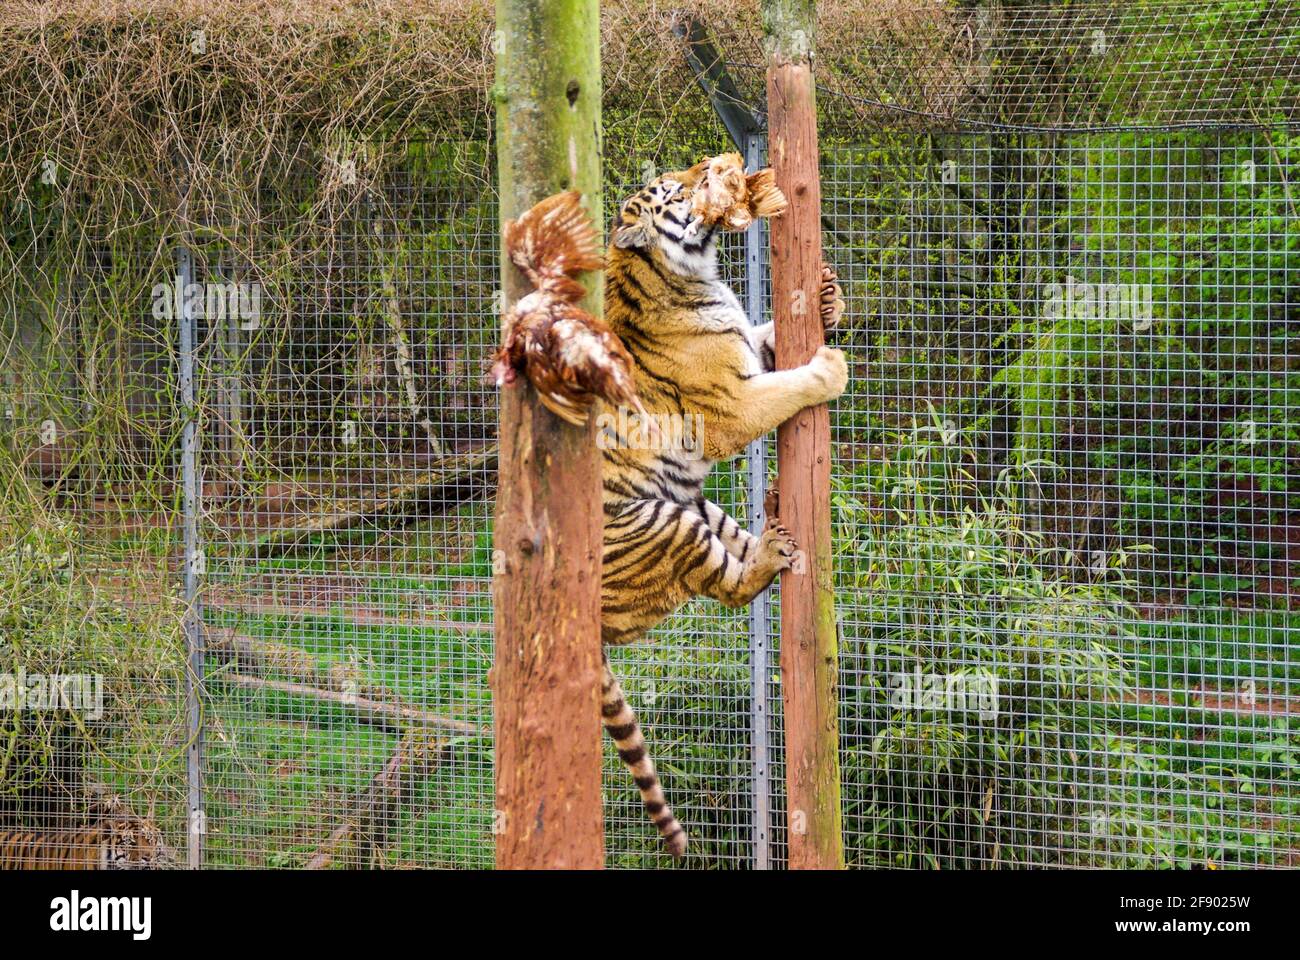 Tiger au zoo de South Lakes Safari, anciennement Parc animalier de South Lakes. En 2013, un tigre mauvait un employé du zoo. Mât d'escalade au moment de l'alimentation Banque D'Images